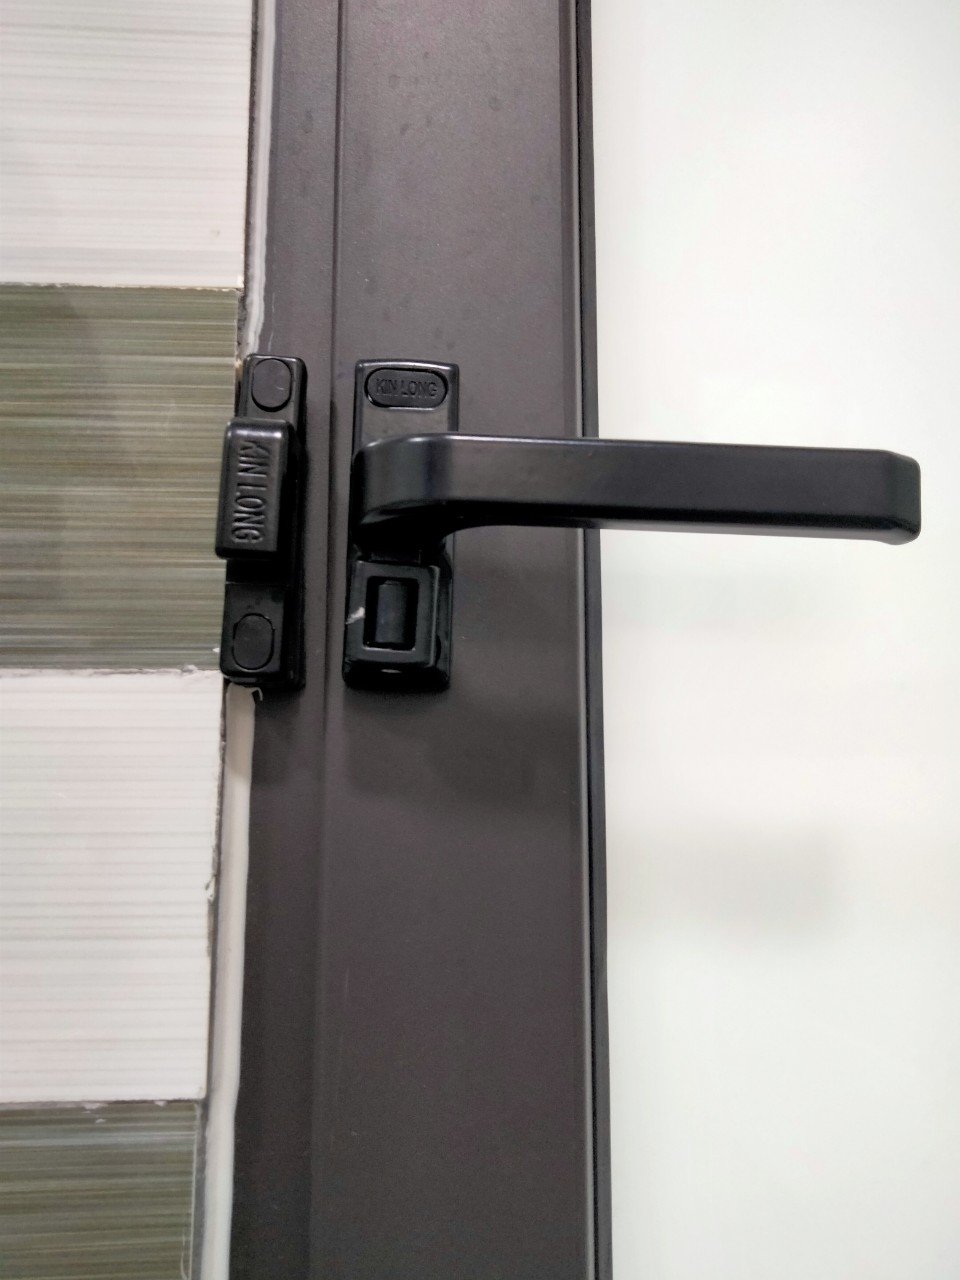 Với khóa cửa sổ nhôm kính chính hãng, bạn sẽ không còn lo lắng về việc bị đột nhập hay mất trộm, mà vẫn tận hưởng được sự thoải mái, an toàn khi ở trong nhà.